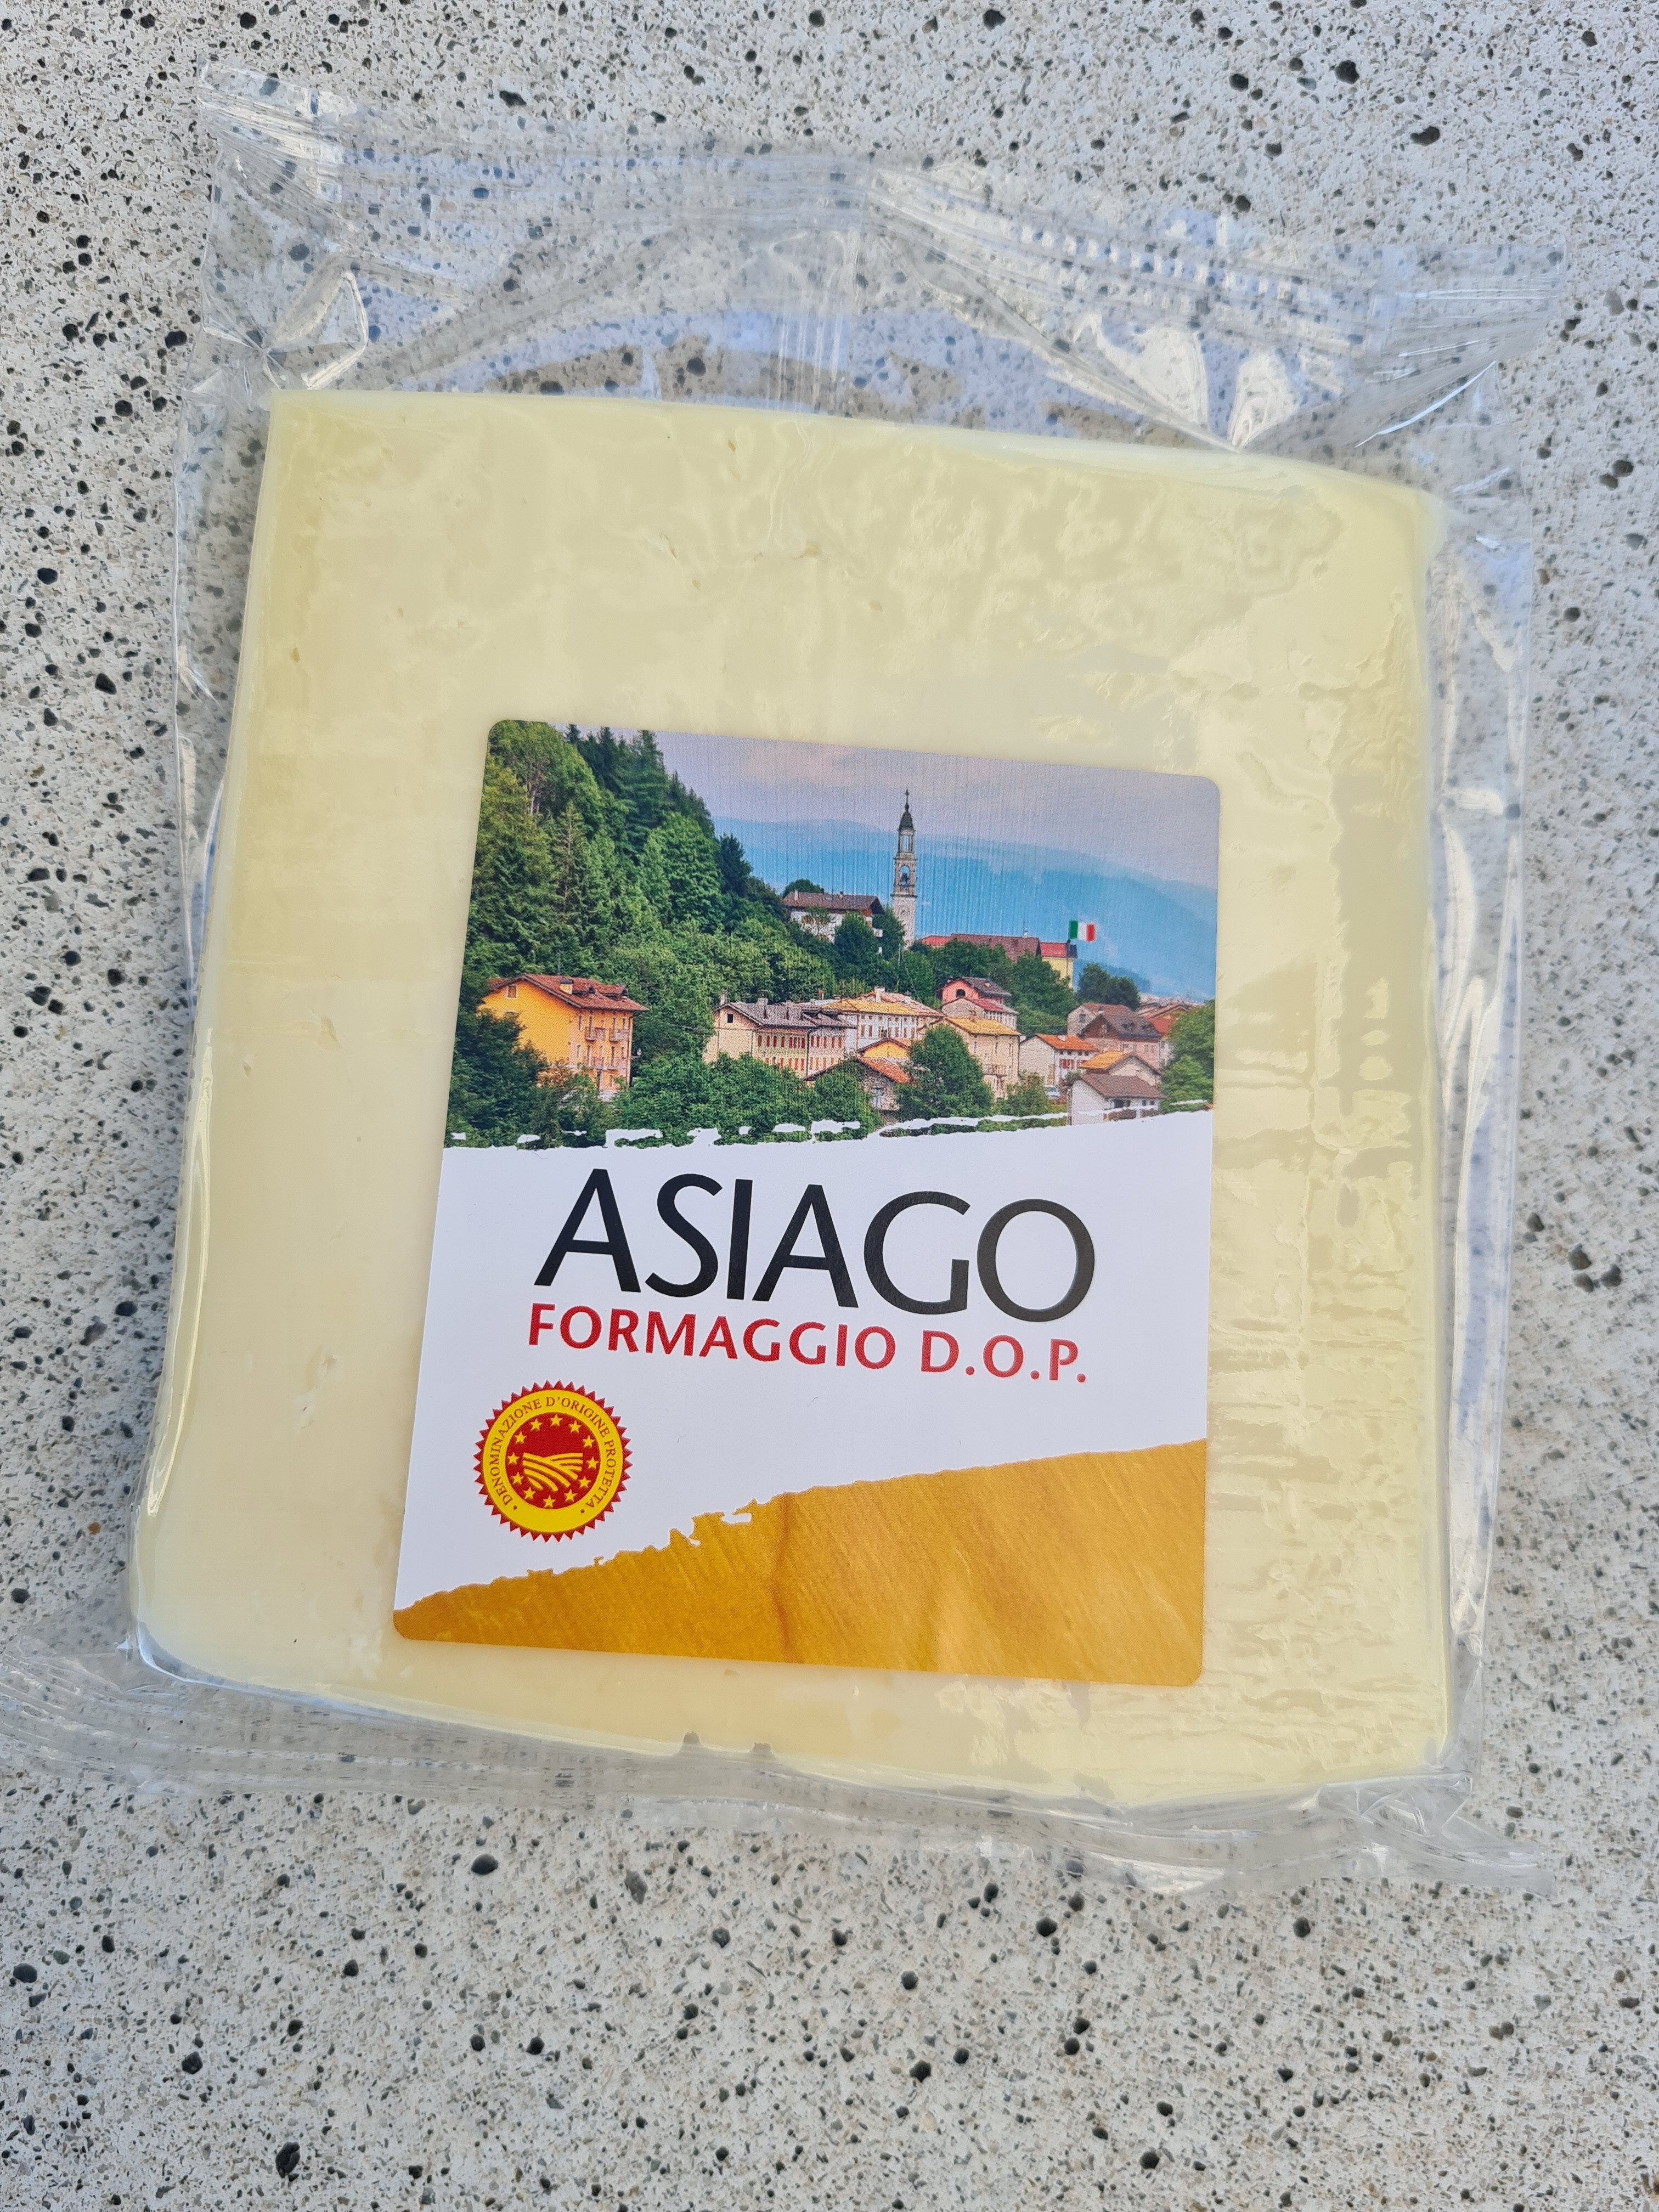 Asiago formaggio D.O.P. - Produkt - en